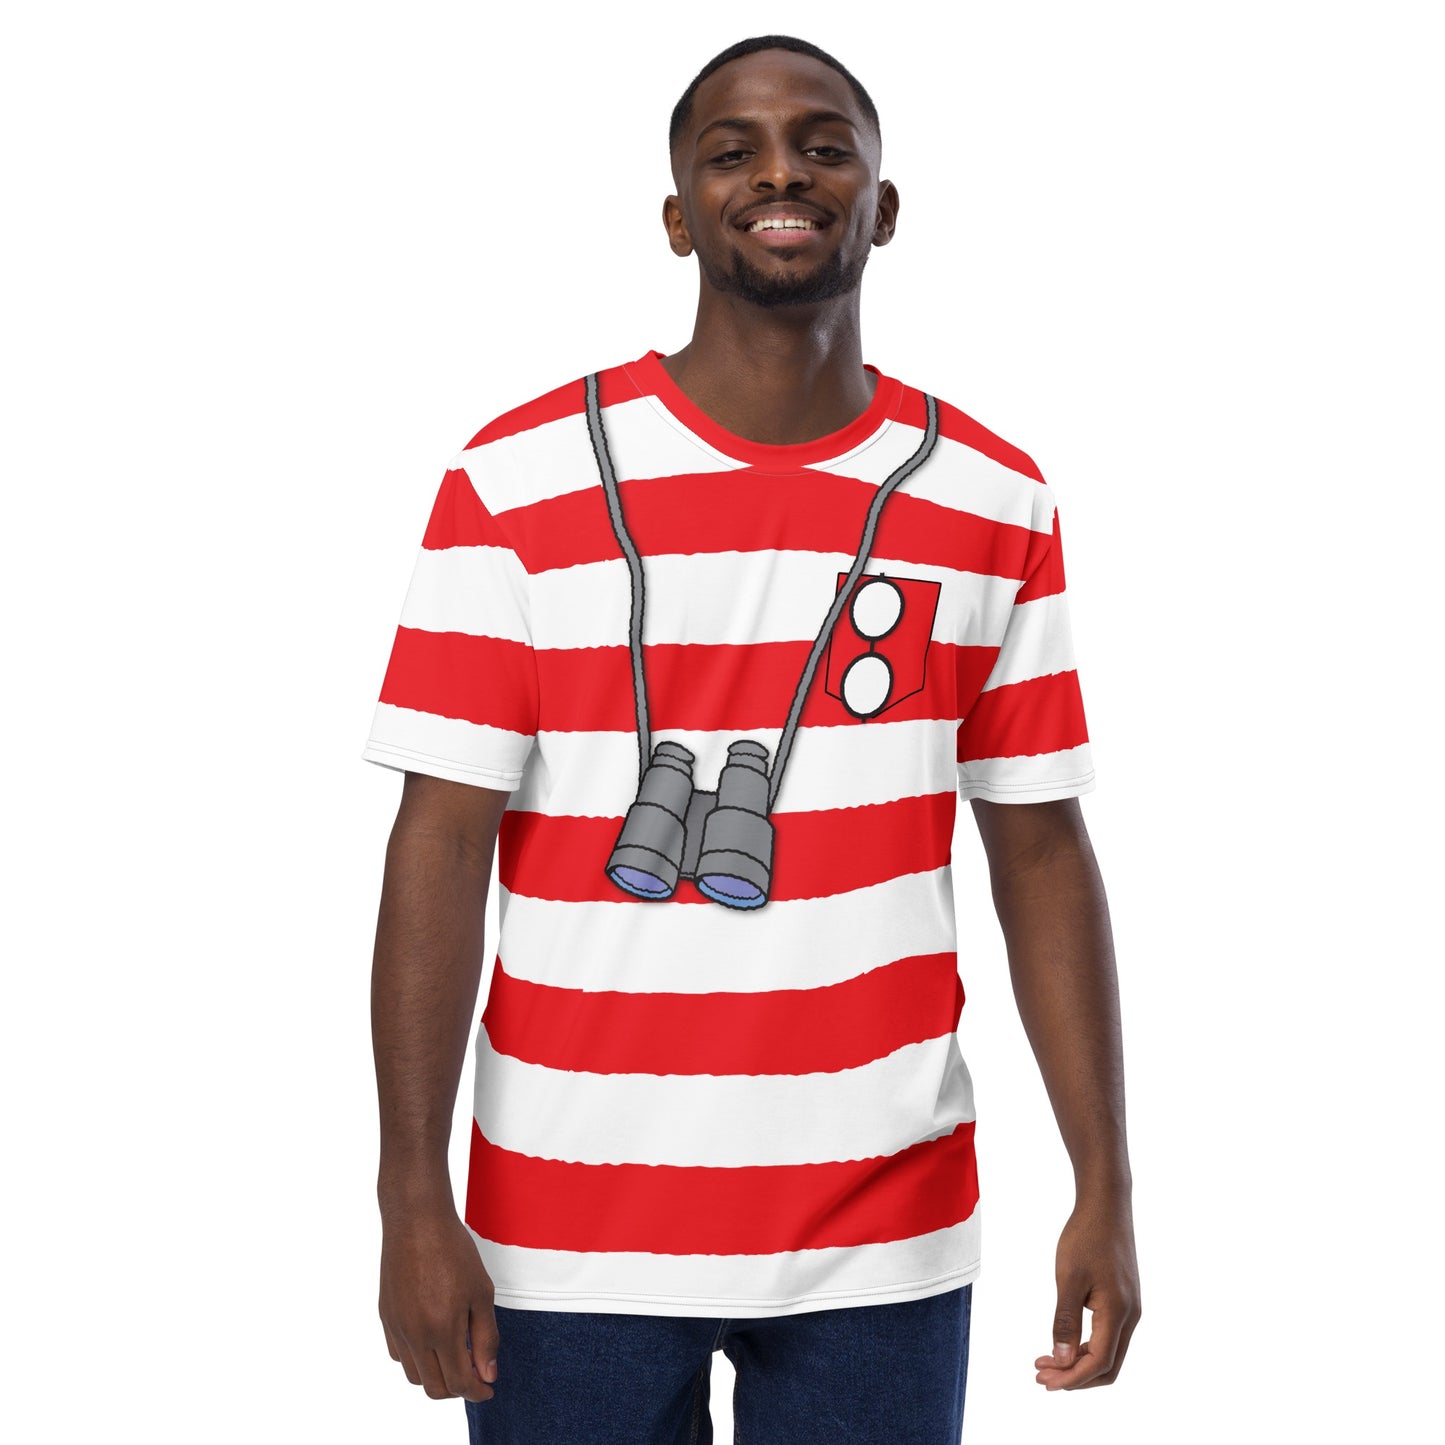 Where's Waldo Cosplay Unisex T-Shirt